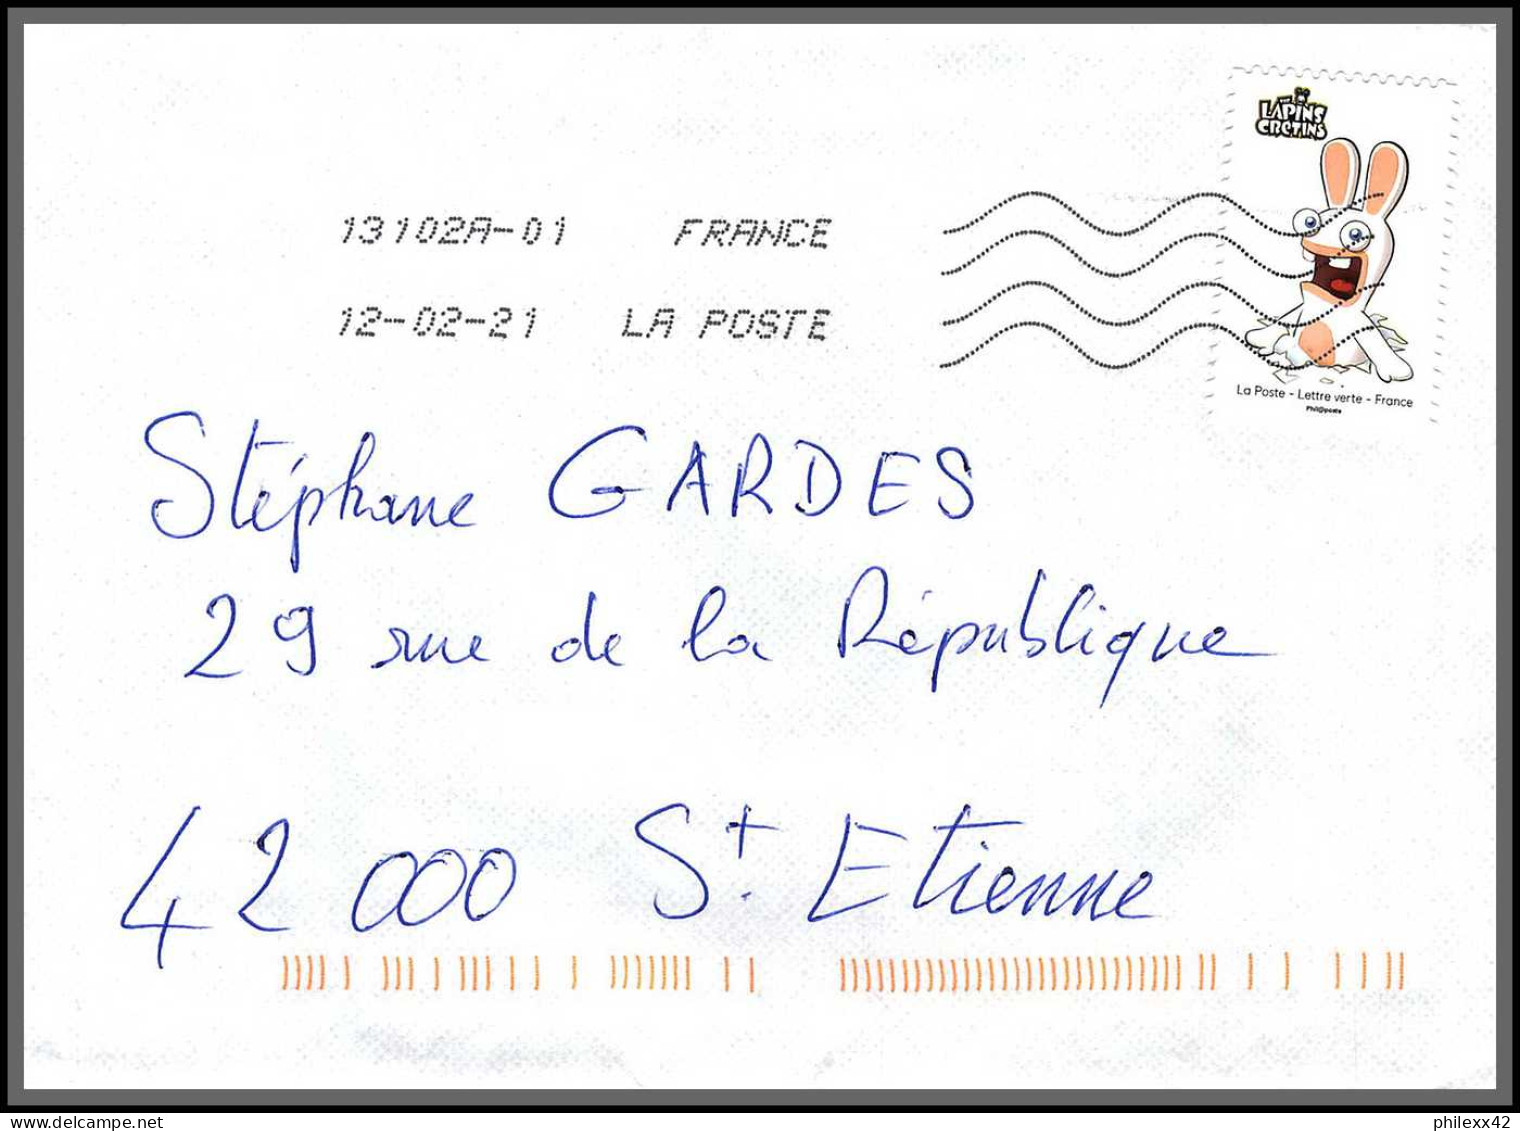 95871 - lot de 16 courriers lettres enveloppes de l'année 2021 divers affranchissements en EUROS